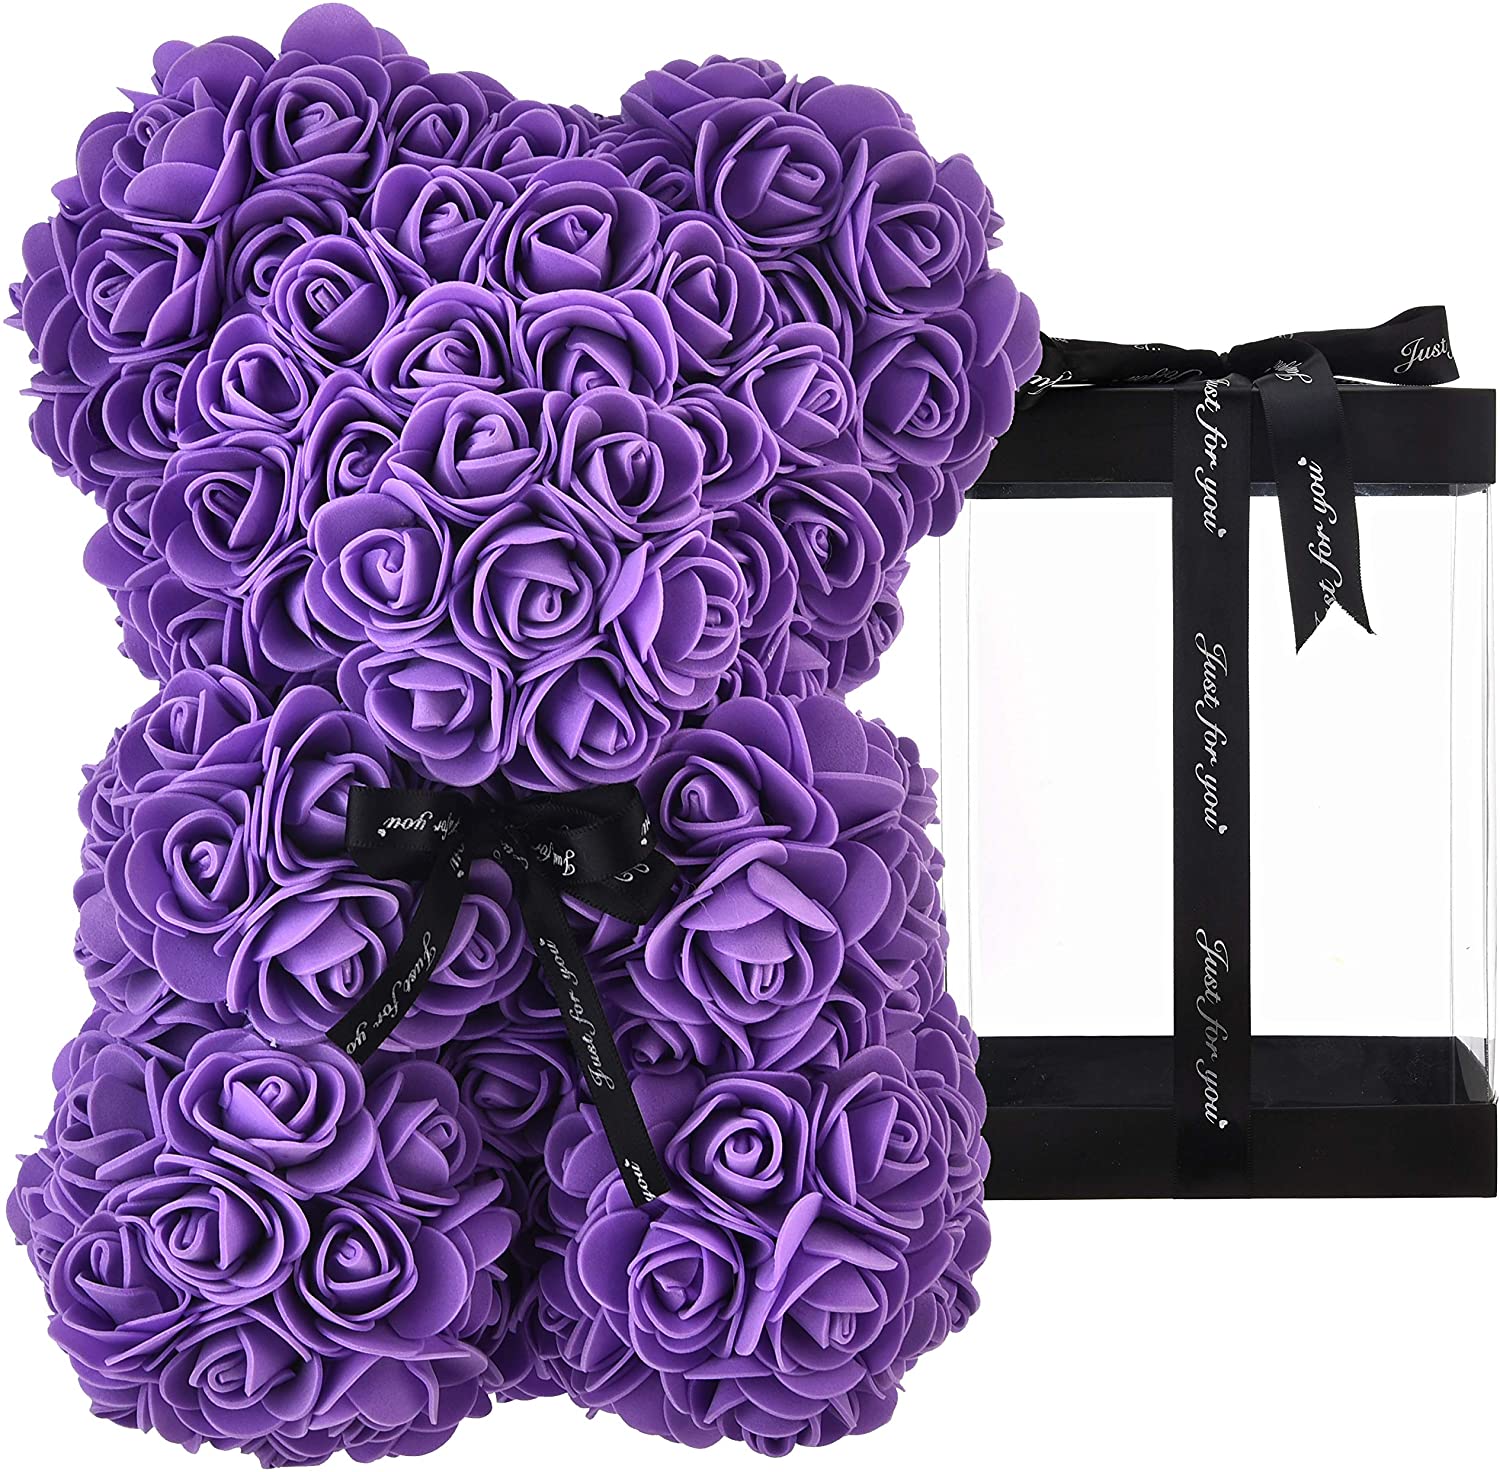 Orsetti di rose 25 cm - Rose Bear viola - Vendita fiori freschi e bouquet.  Spedizioni in Italia.